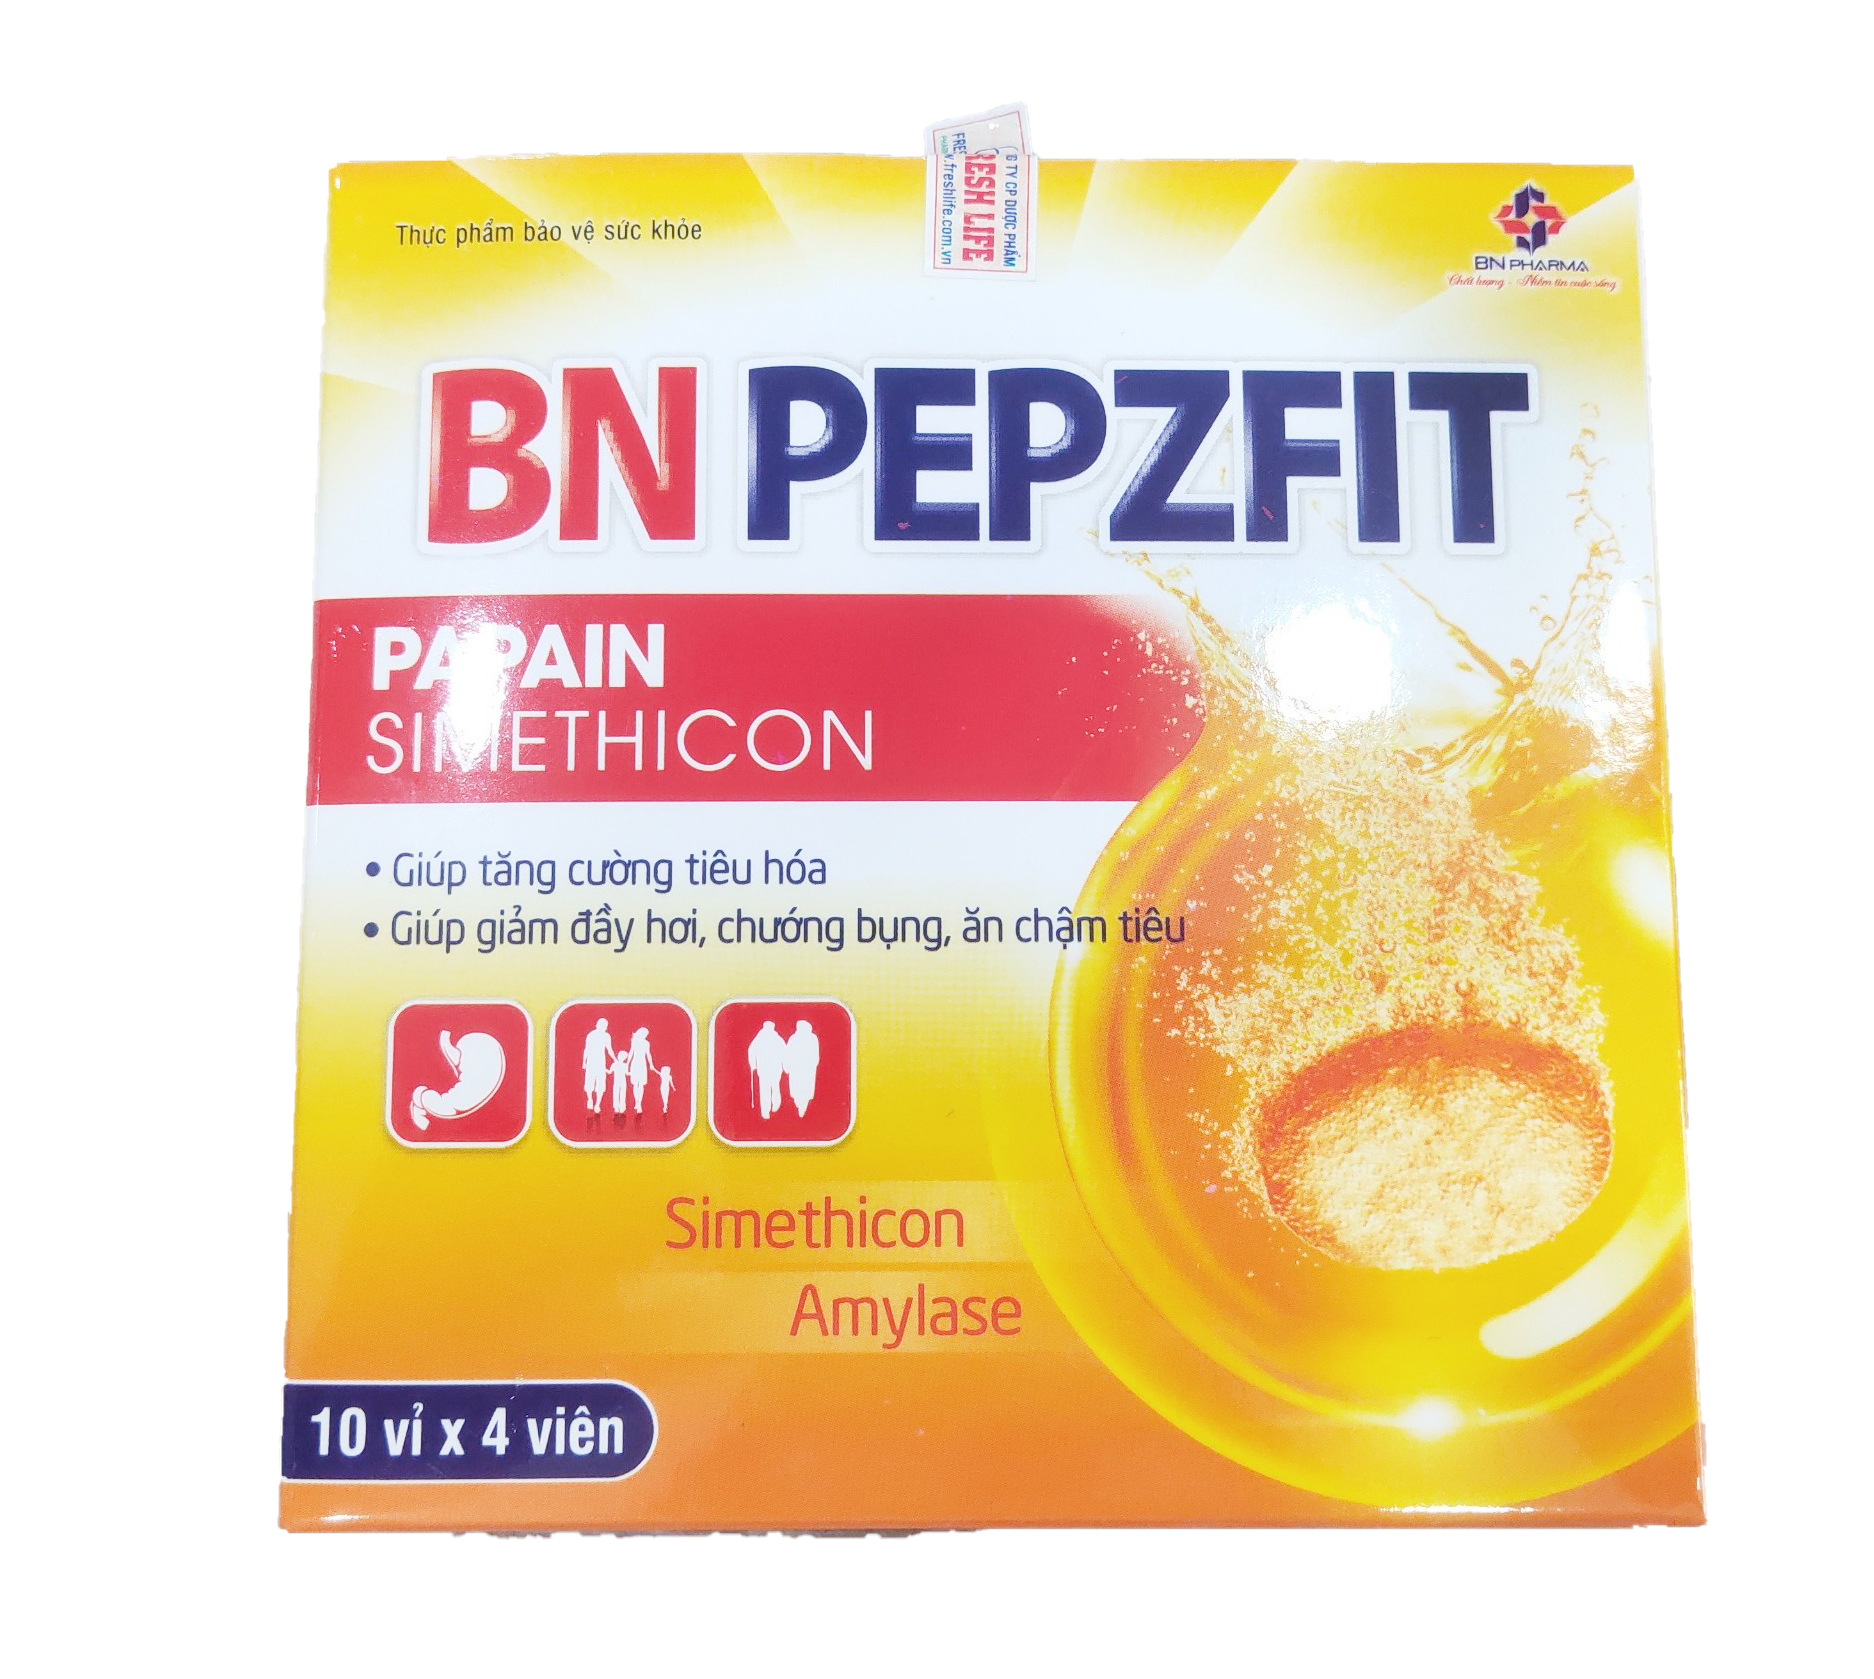 Viên sủi tiêu hóa BN PEPZFIT - Hỗ trợ làm giảm các triệu chứng đầy hơi, chướng bụng, chậm tiêu hóa